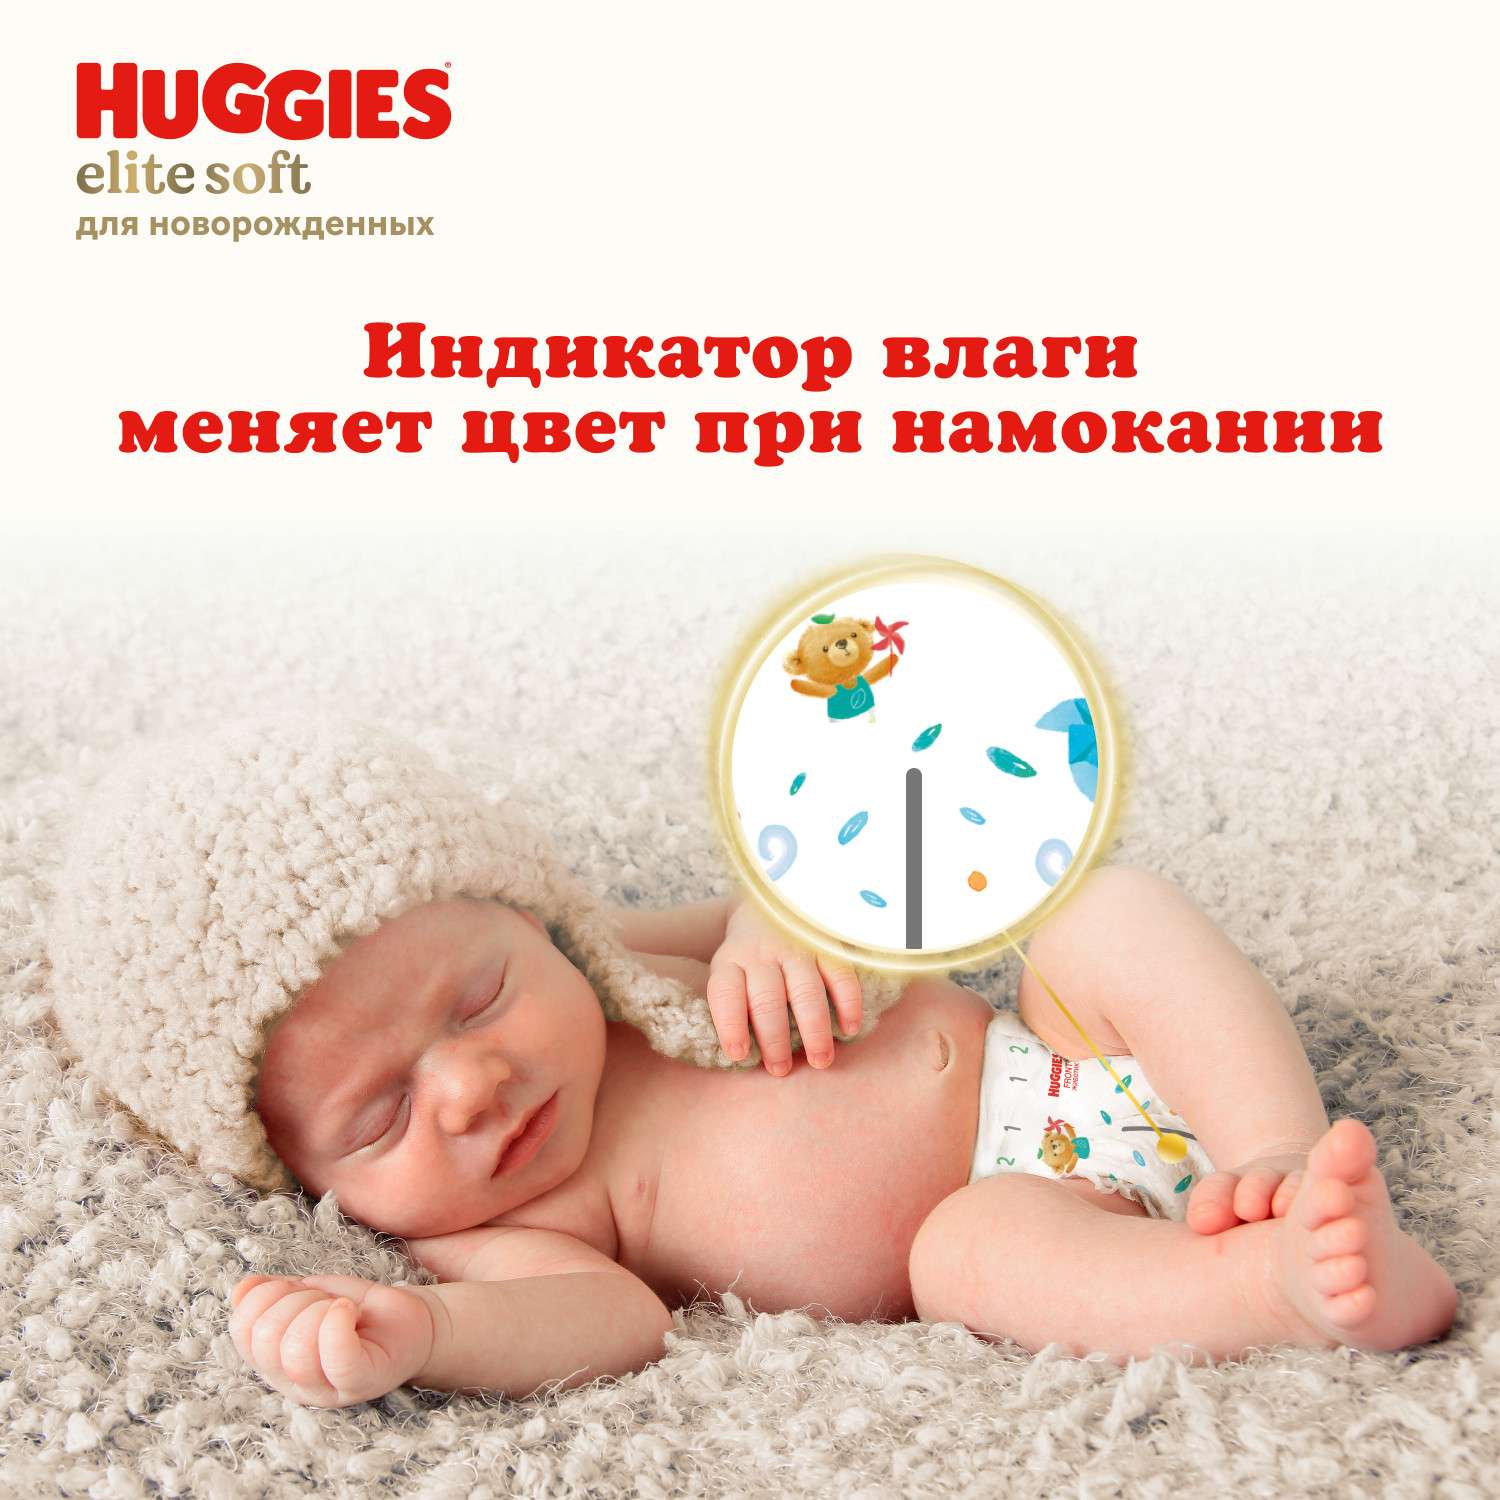 Подгузники Huggies Elite Soft для новорожденных 1 3-5кг 84шт - фото 11